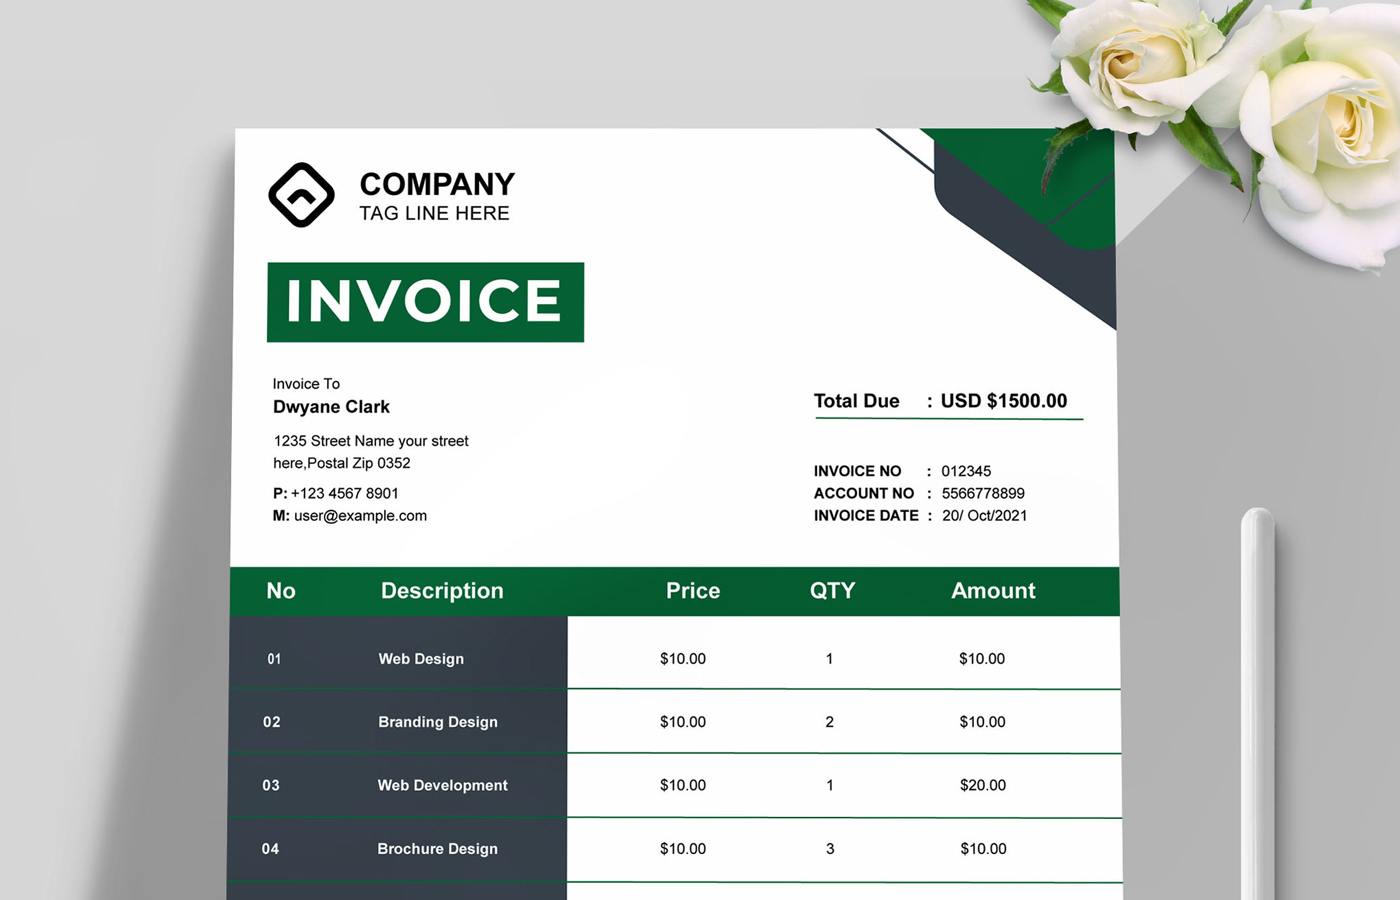 Company Invoice Templates Layout